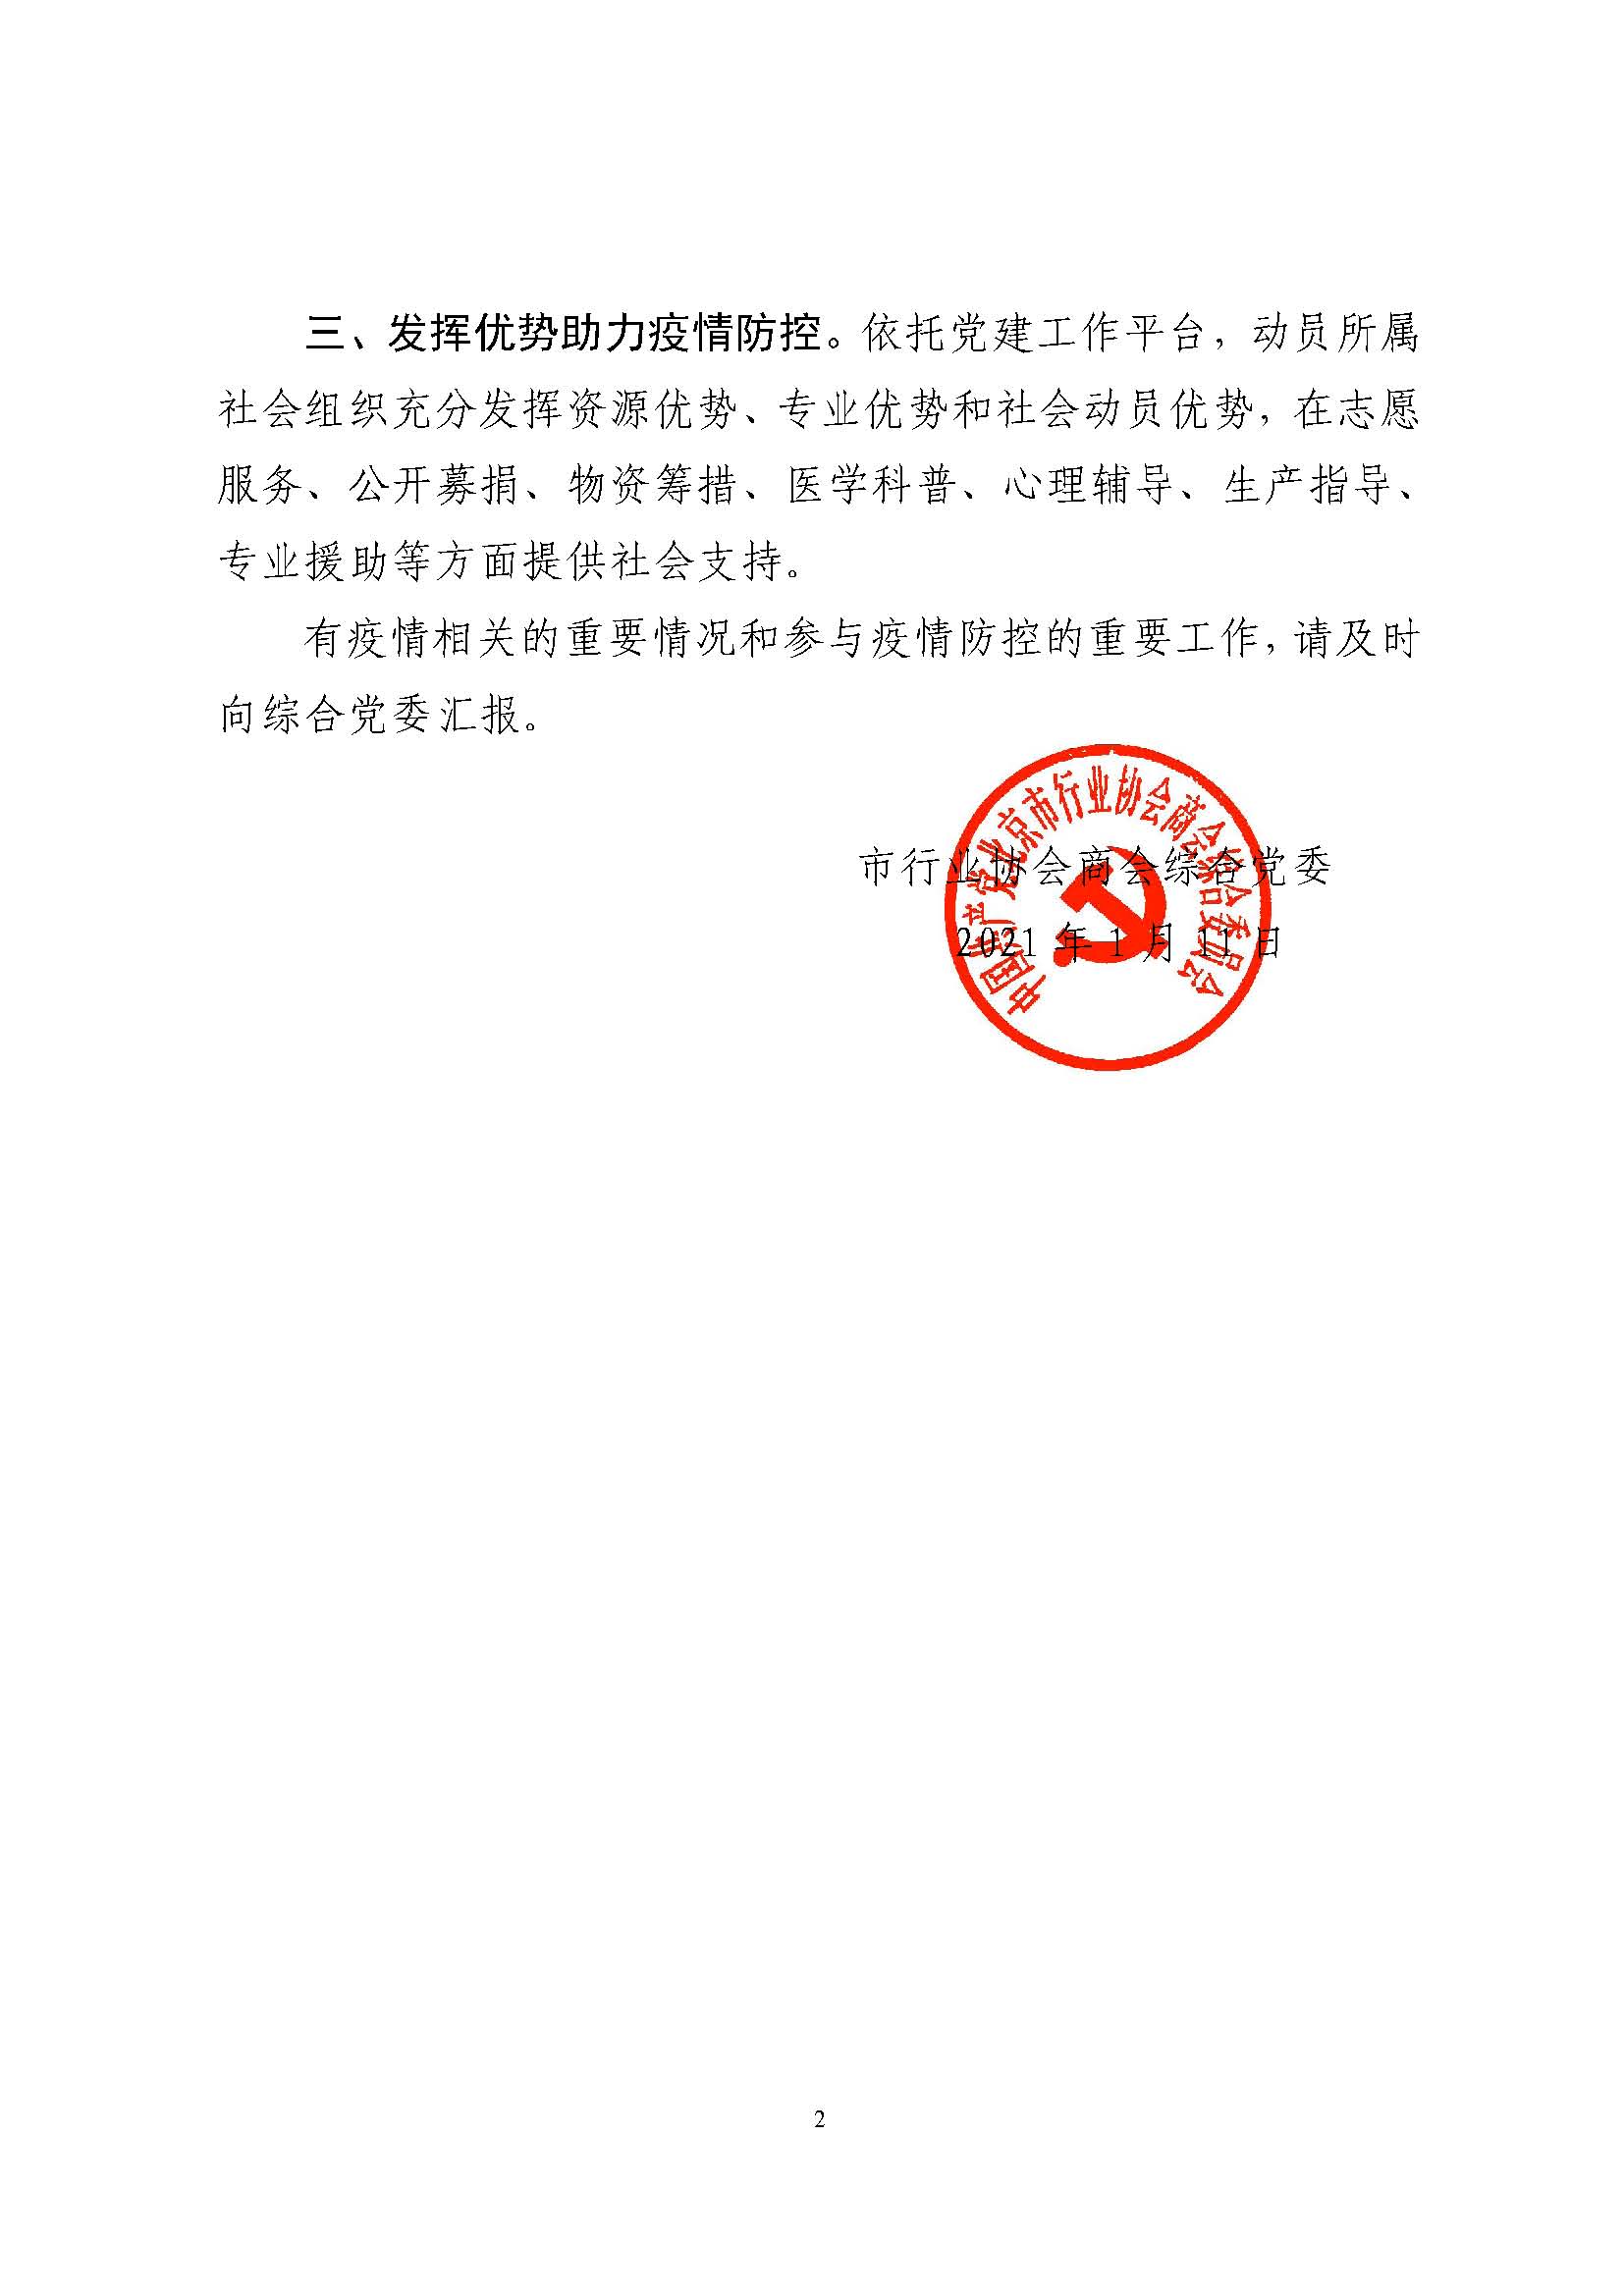 综合党委关于转发两新工委疫情防控工作通知的通知(1)_页面_2.jpg